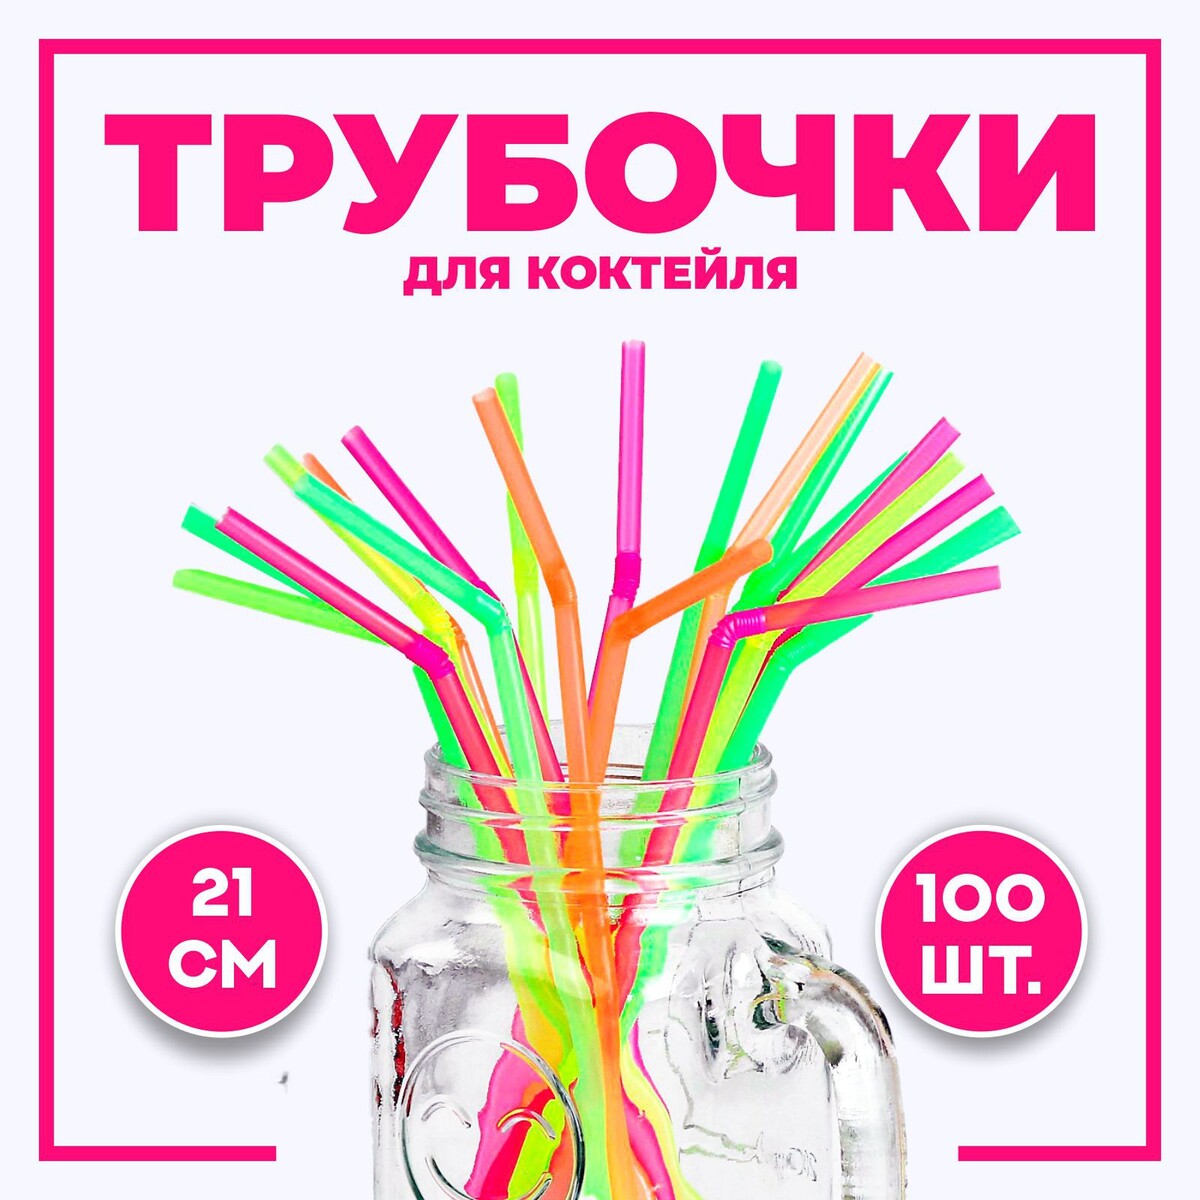 Трубочка для коктейля, пластик, набор 100 шт. набор бокалов для коктейля 530 мл rona universal 6 шт